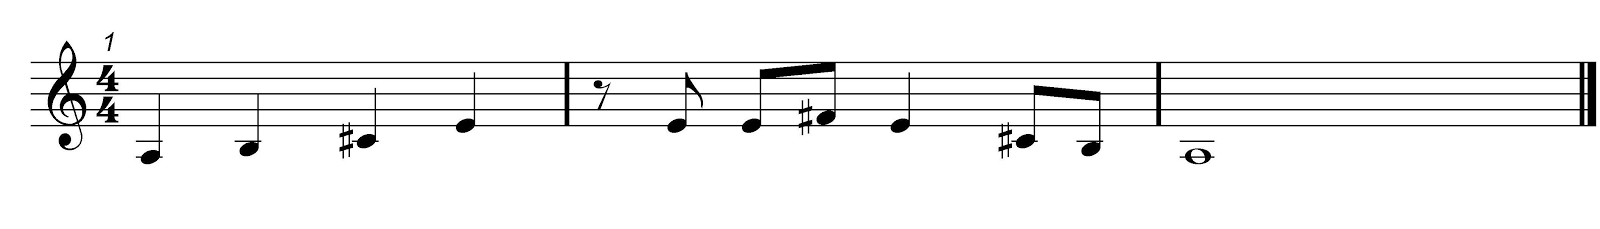 Pentatonic Solfa Melody 4 Score 1